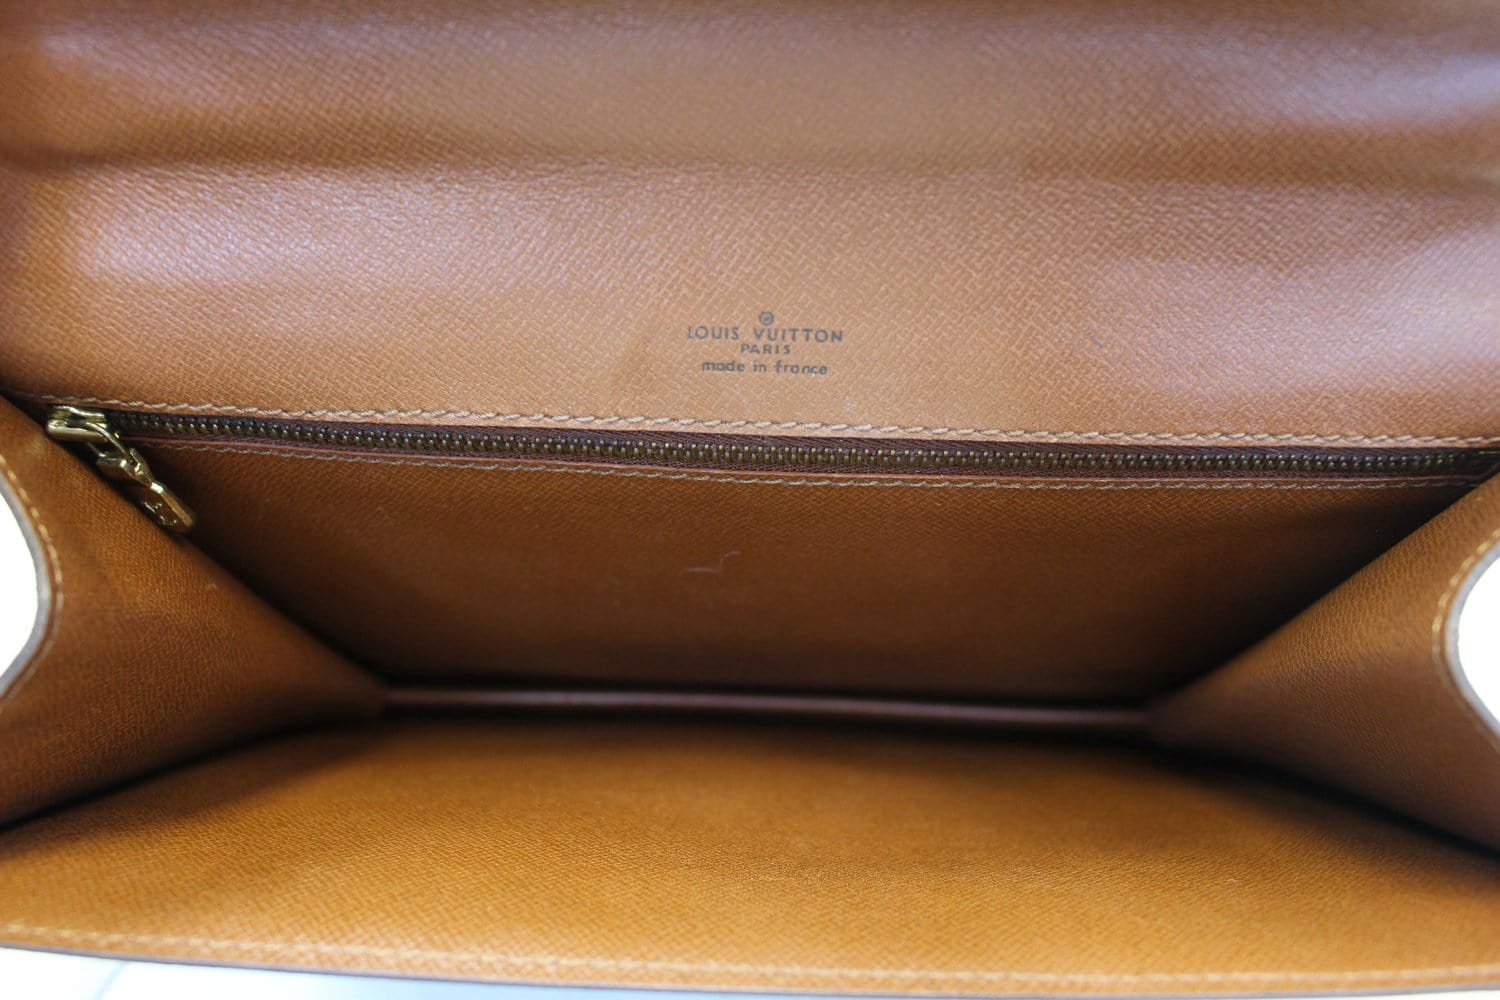 Brown Canvas Louis Vuitton Monceau Bag